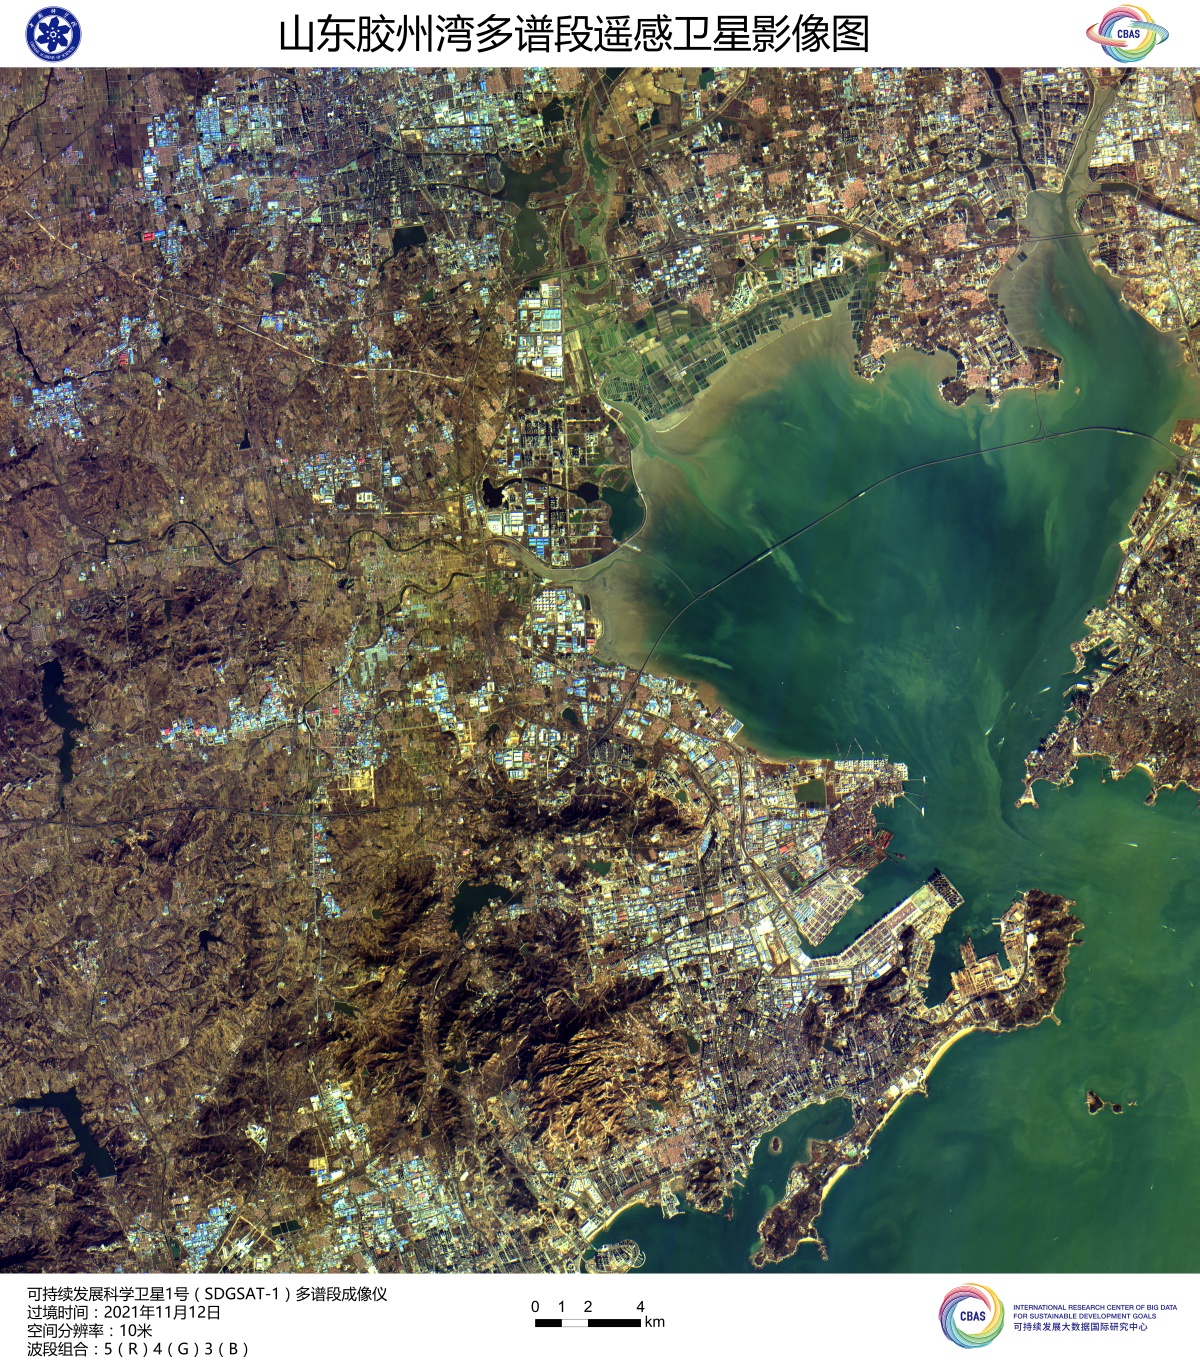 可持续发展科学卫星1号首批影像发布